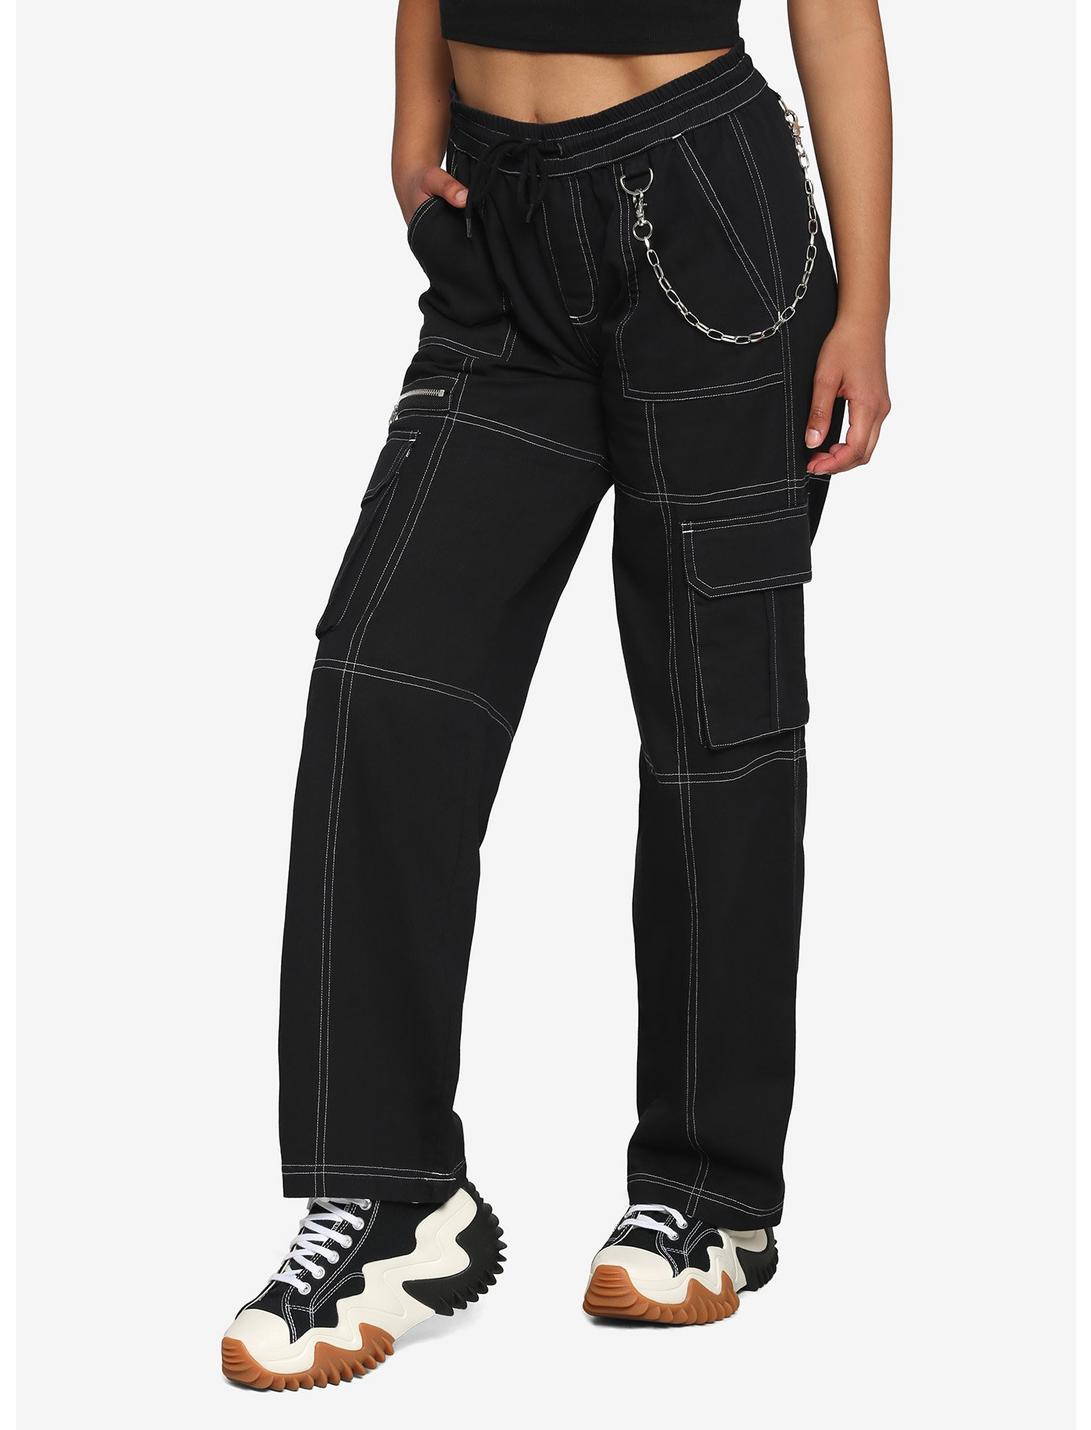 Black & White Stitch Chain Carpenter Pants, BLACK  WHITE, hi-res